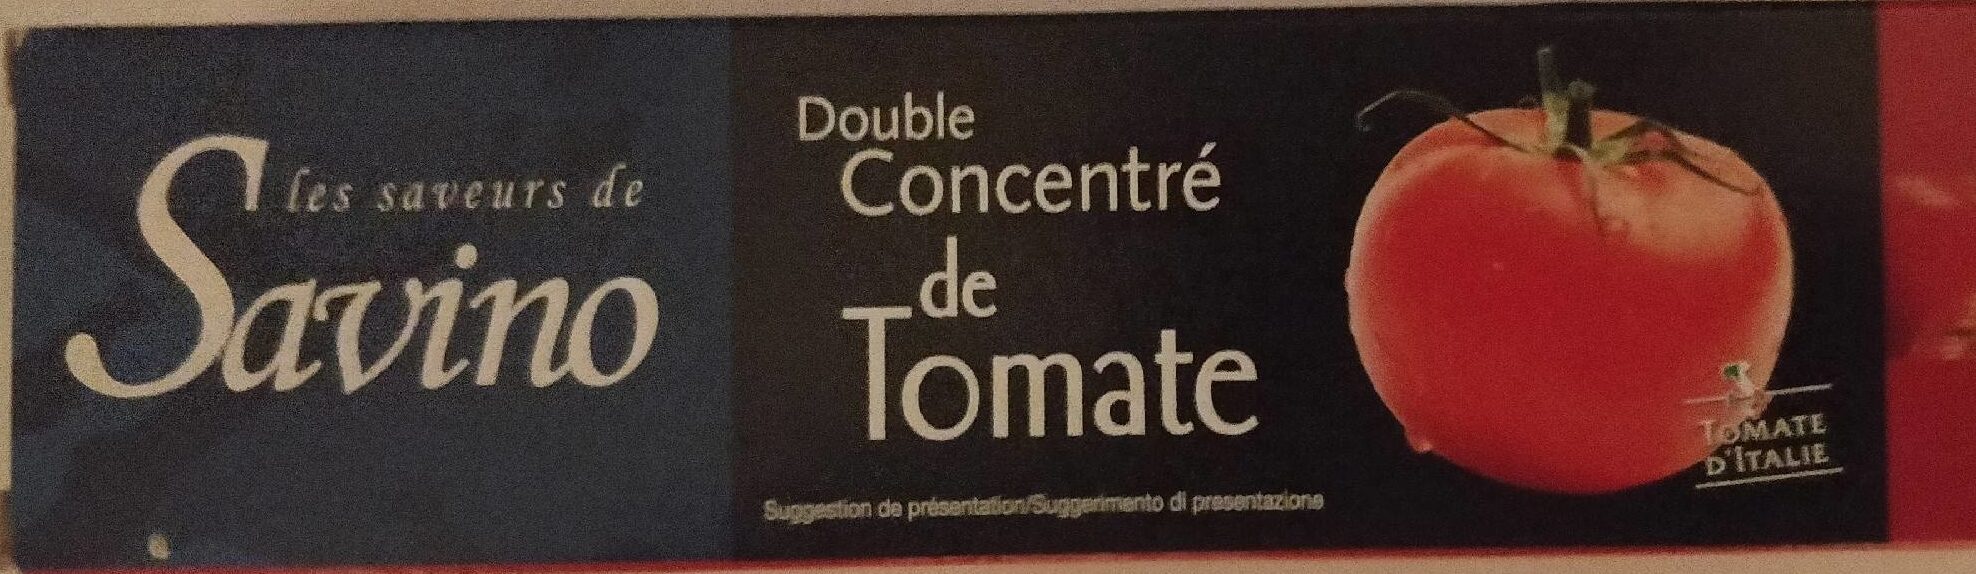 Double concentré de tomate - Produit